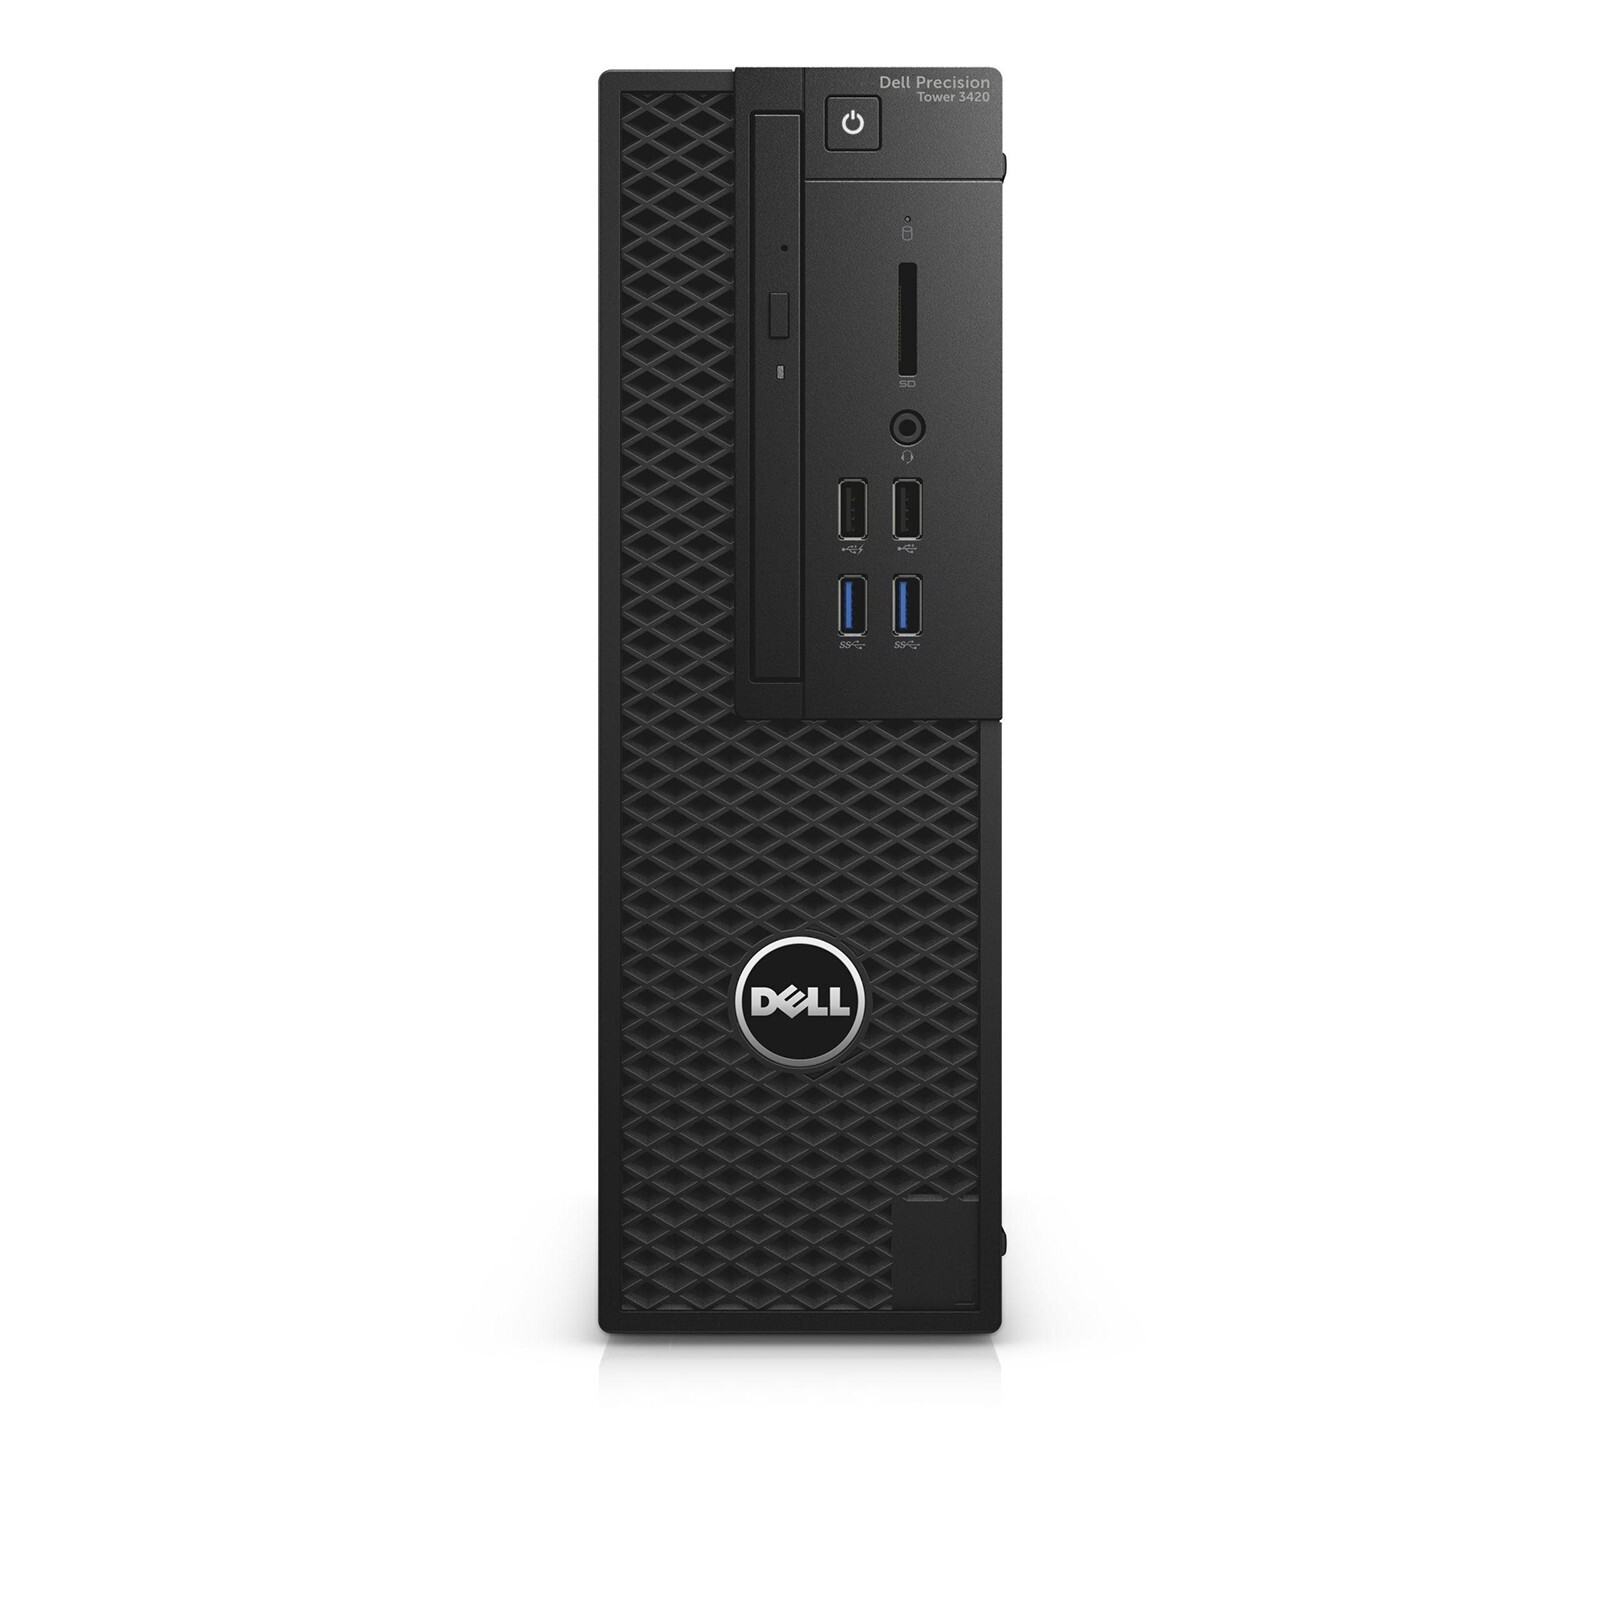 Dell Precision Tower 3420 SFF Intel i7 6700 3.40GHz 8GB RAM 500GB SSD Win 10 Image 1